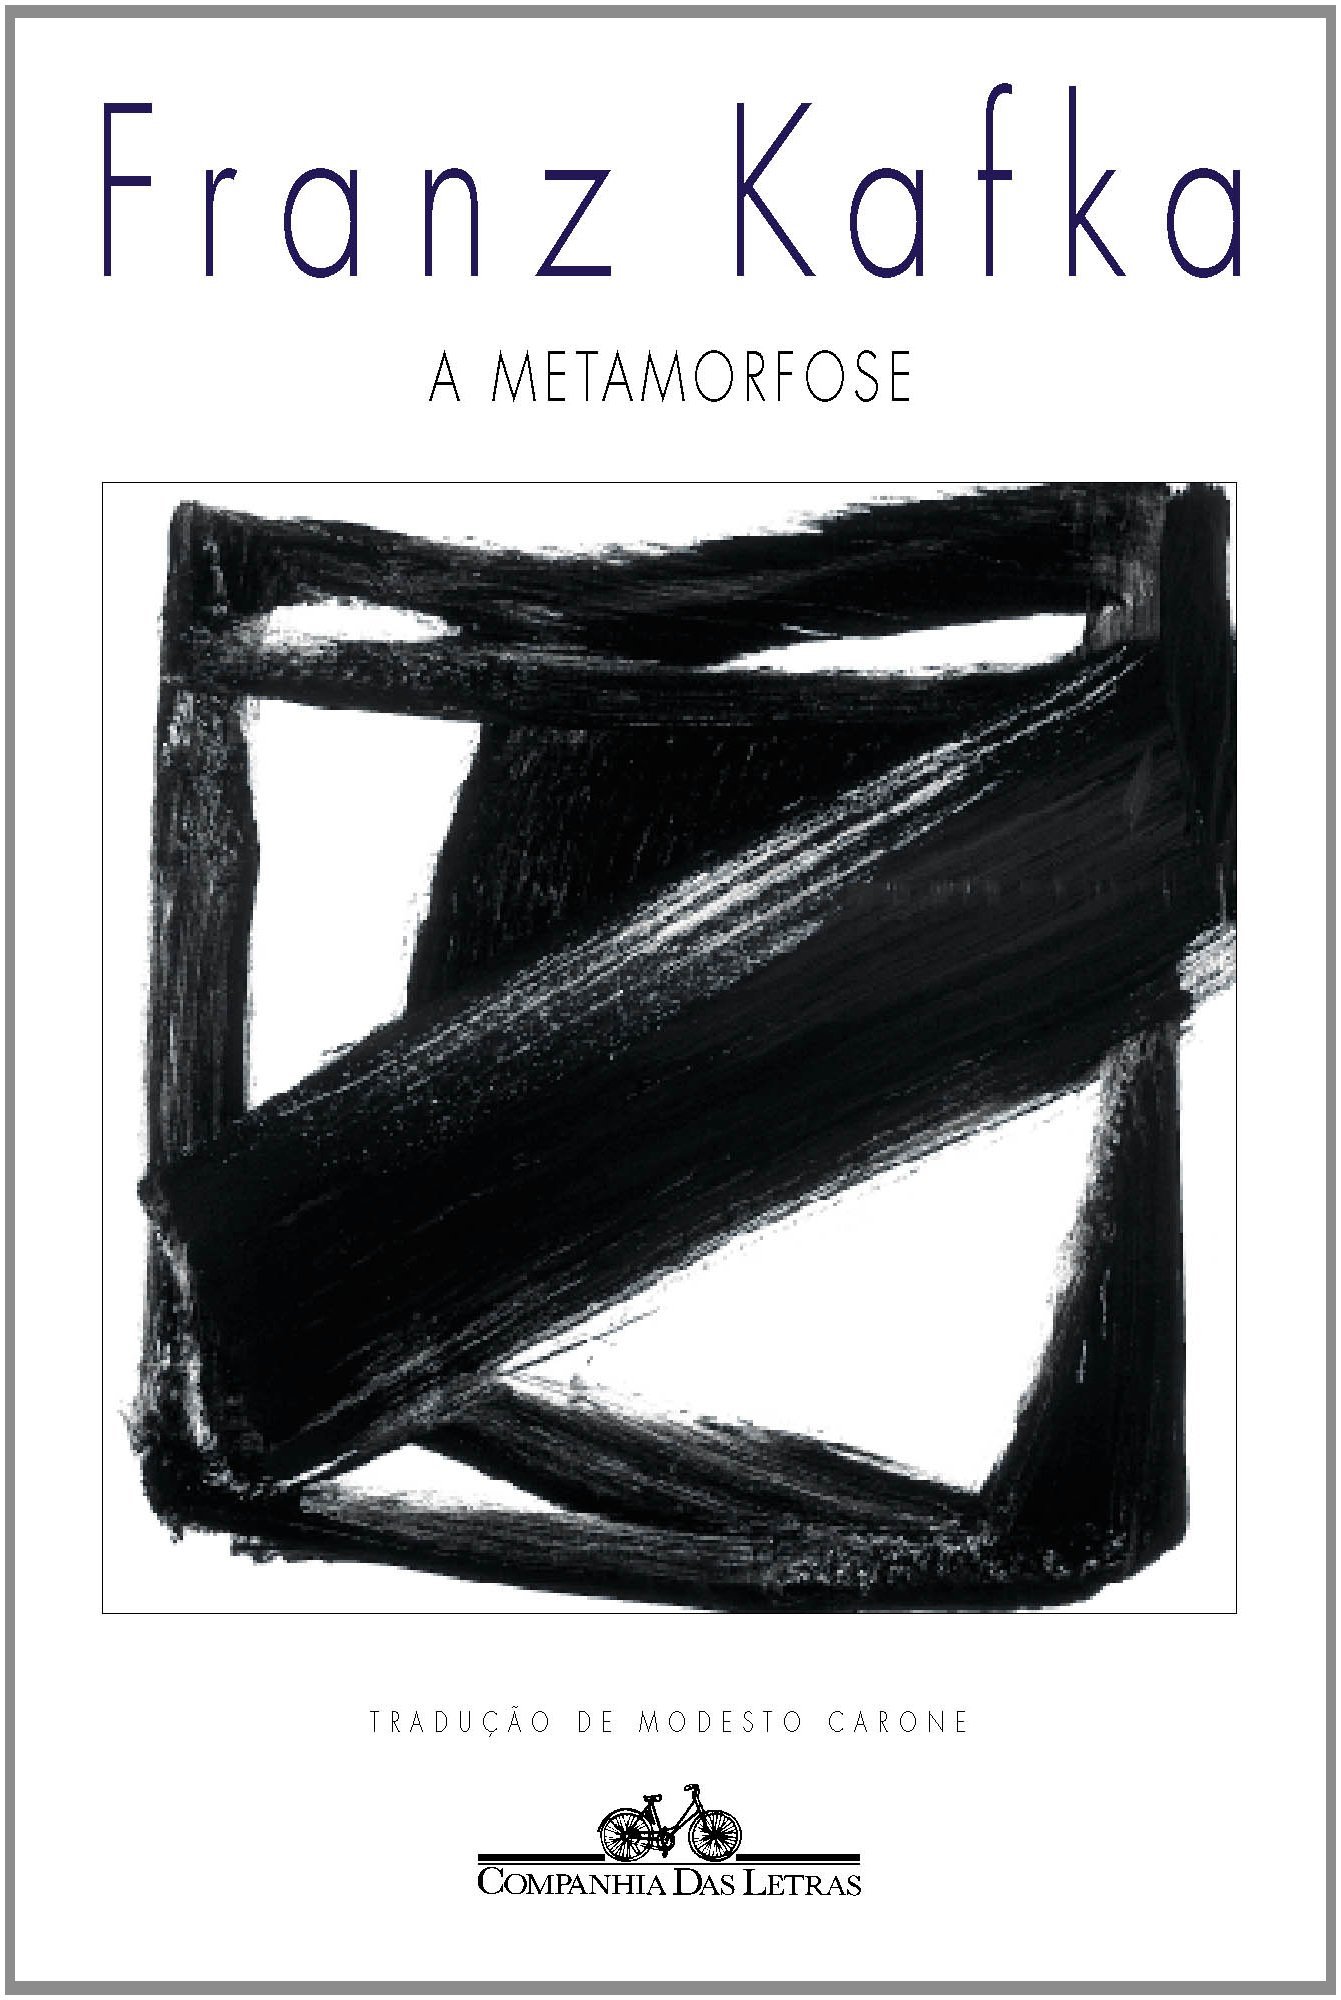 Capa do livro 'A Metamorfose'.